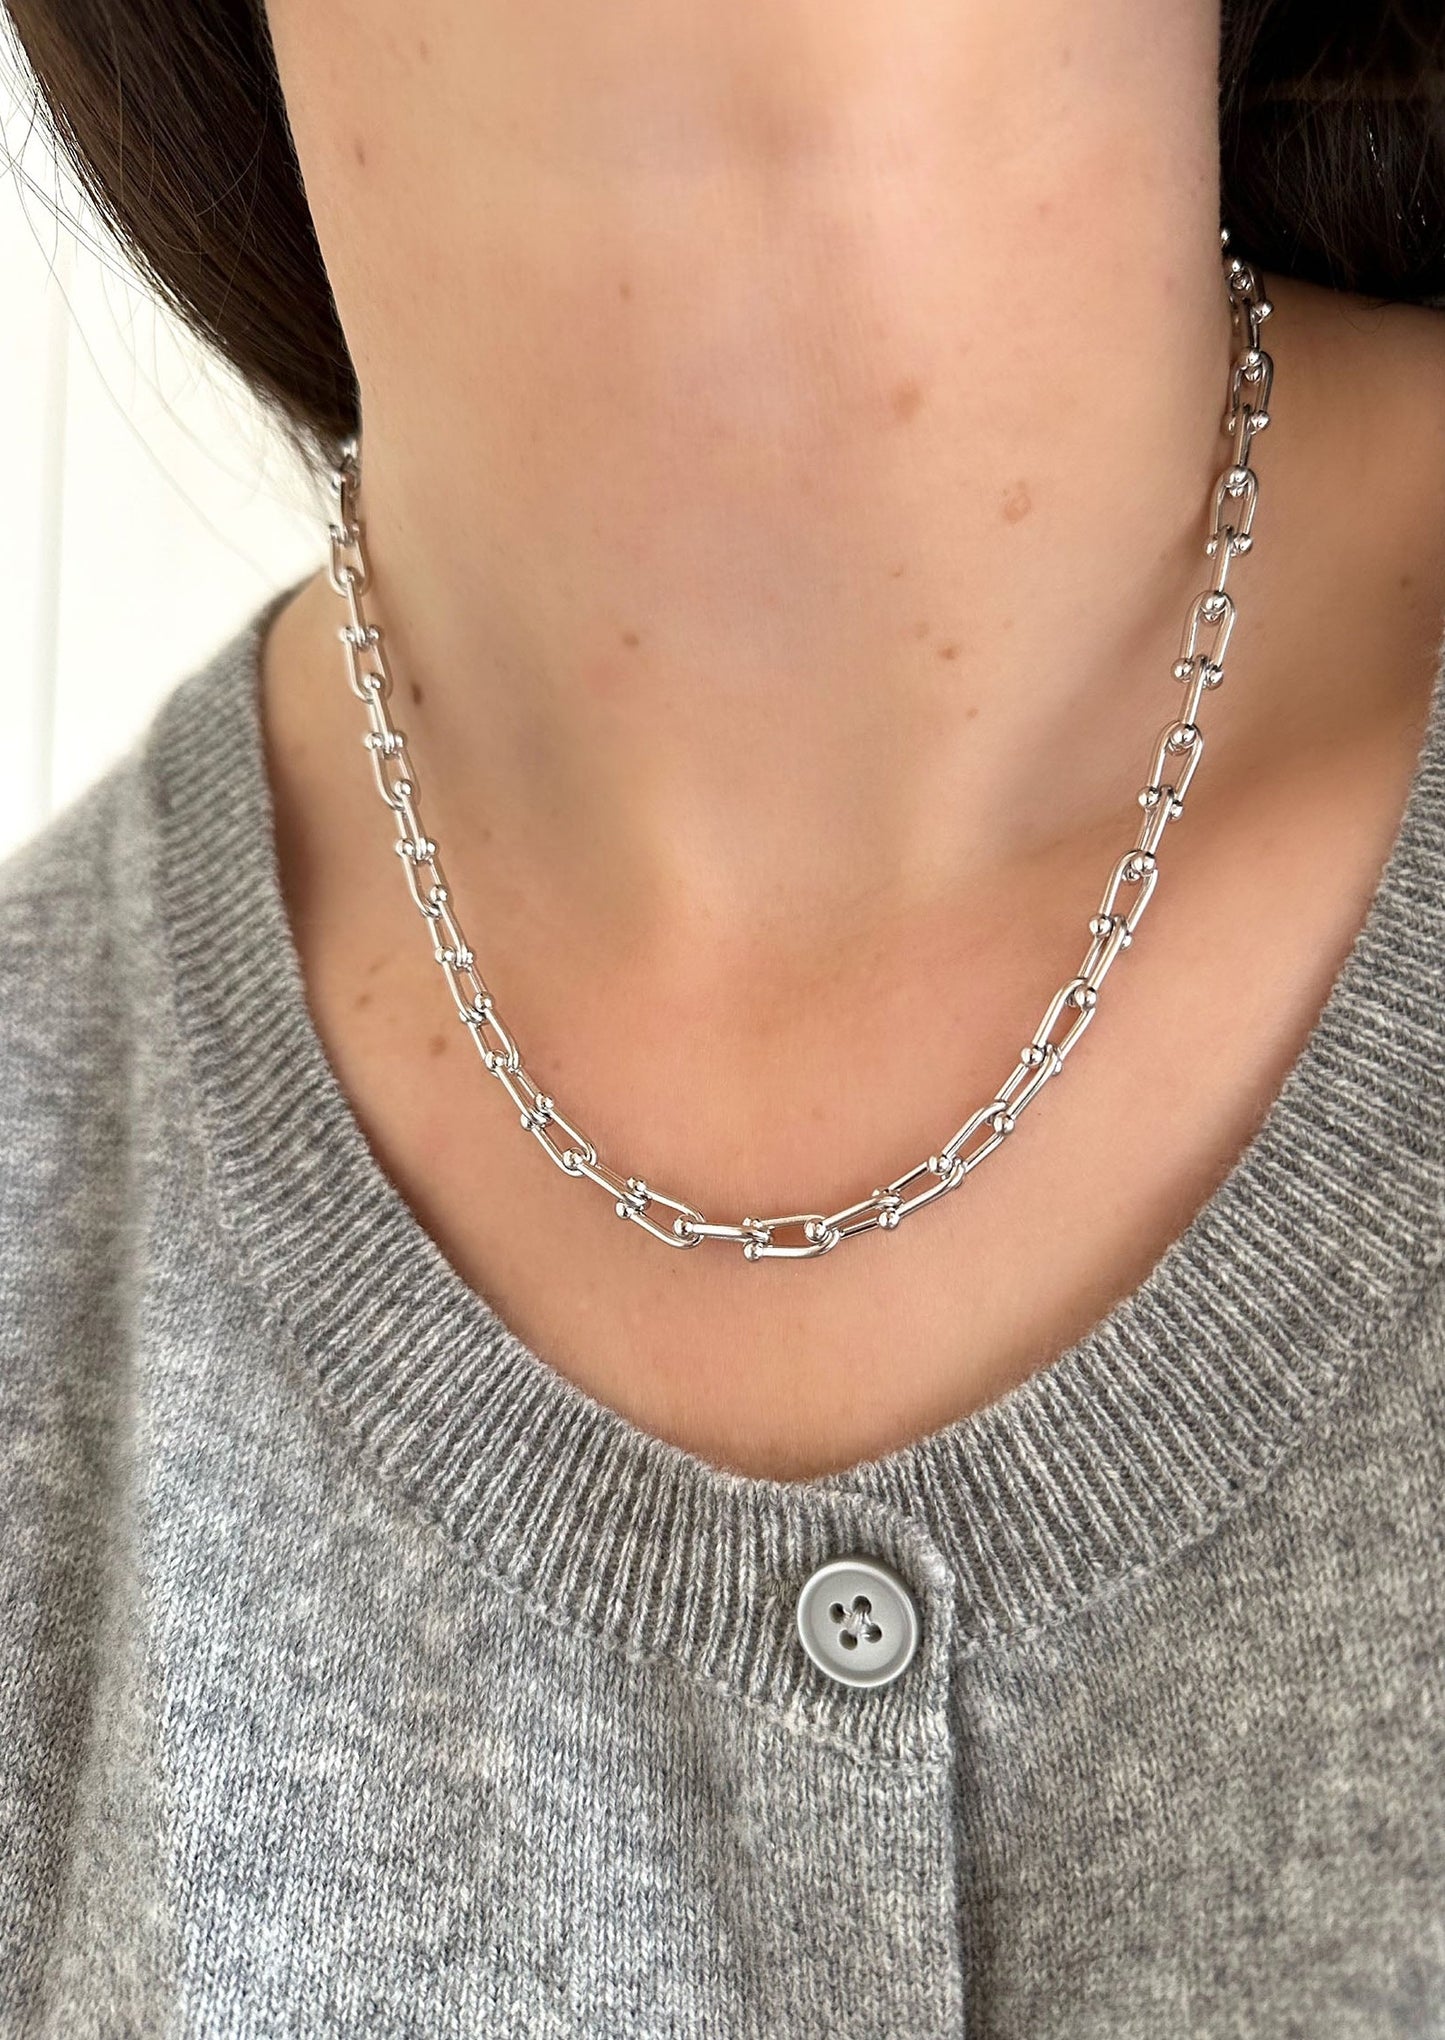 Tiffany Hardware Necklace